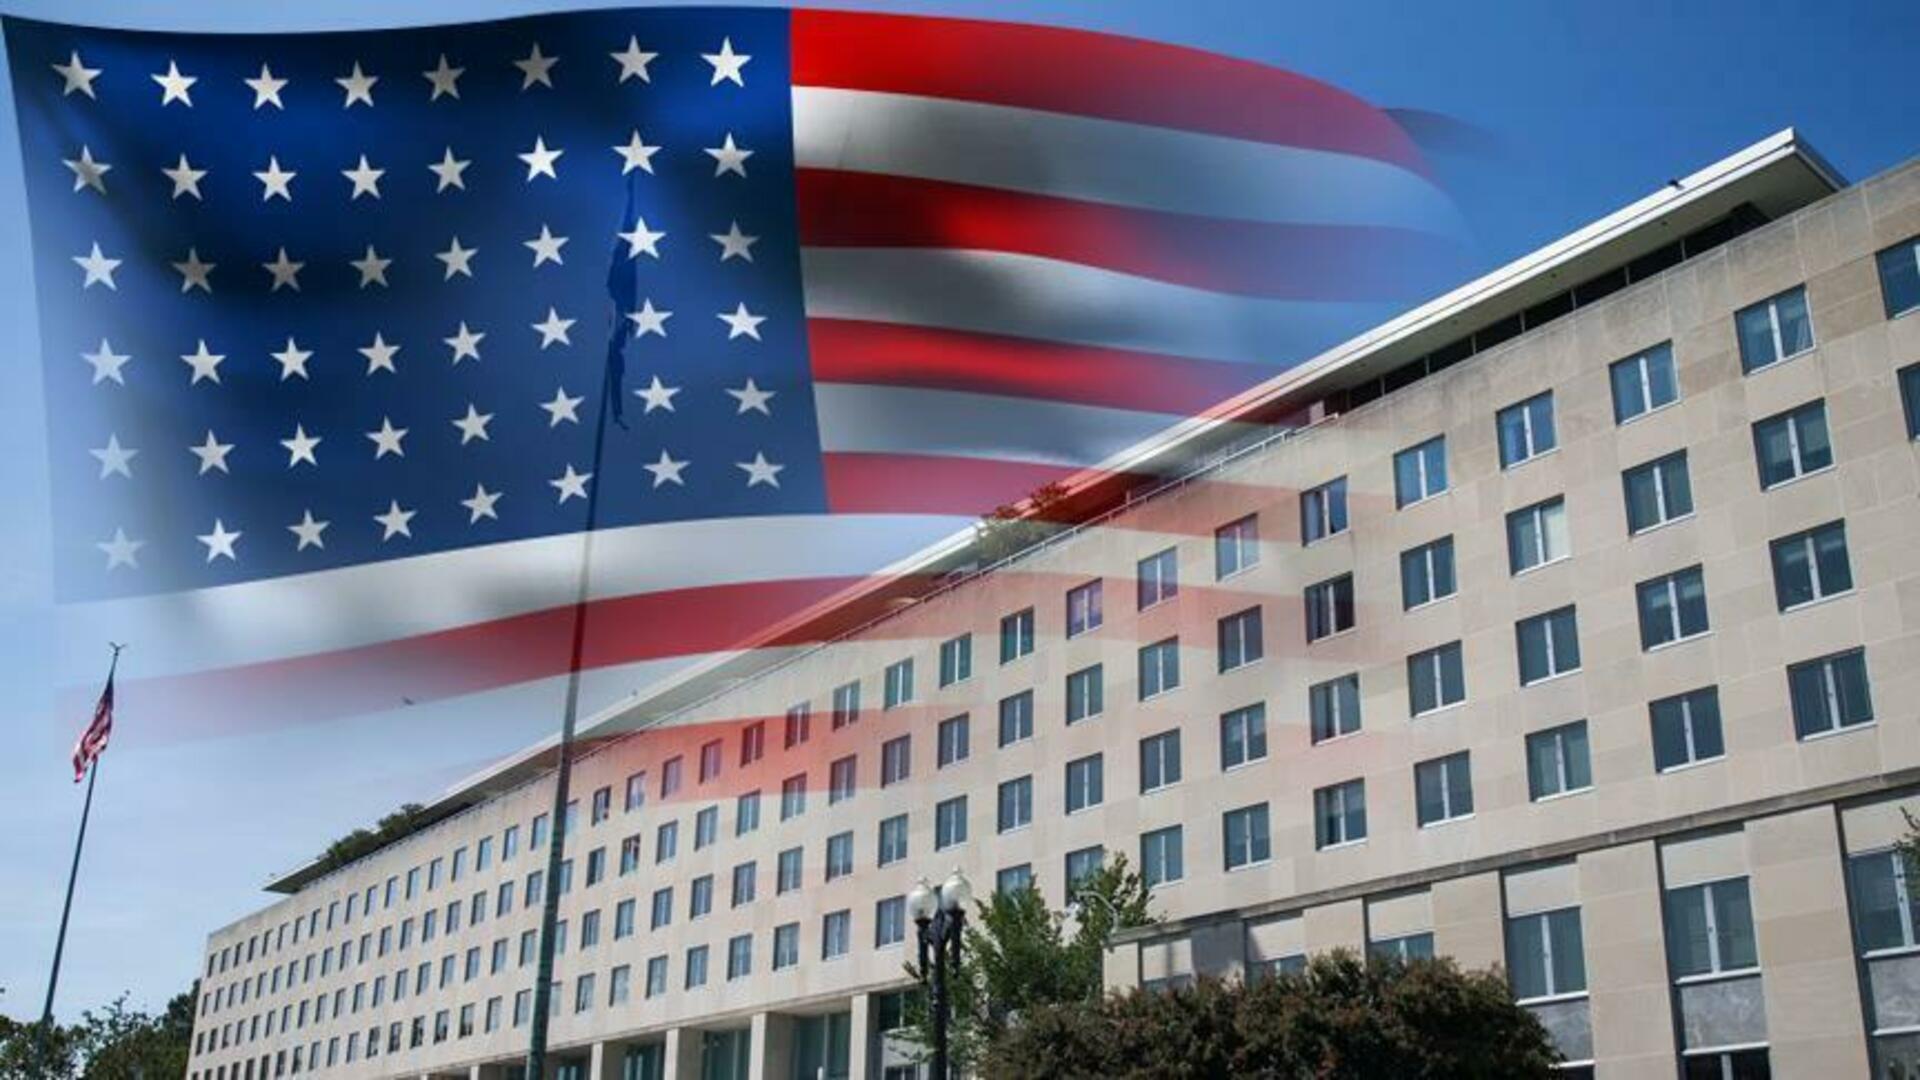 السفارات الأمريكية وتاريخها الأسود